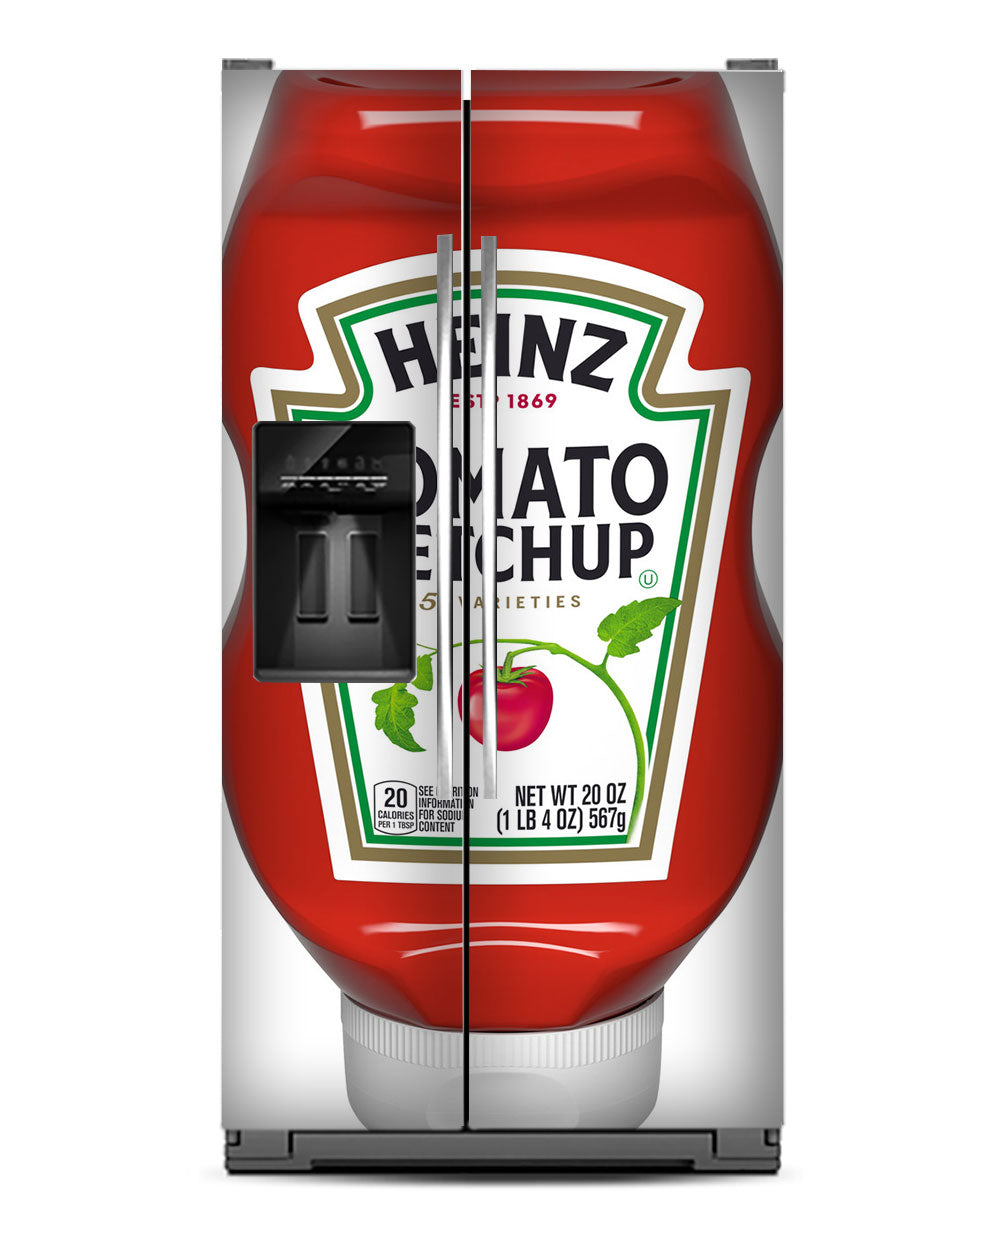 The ketchup